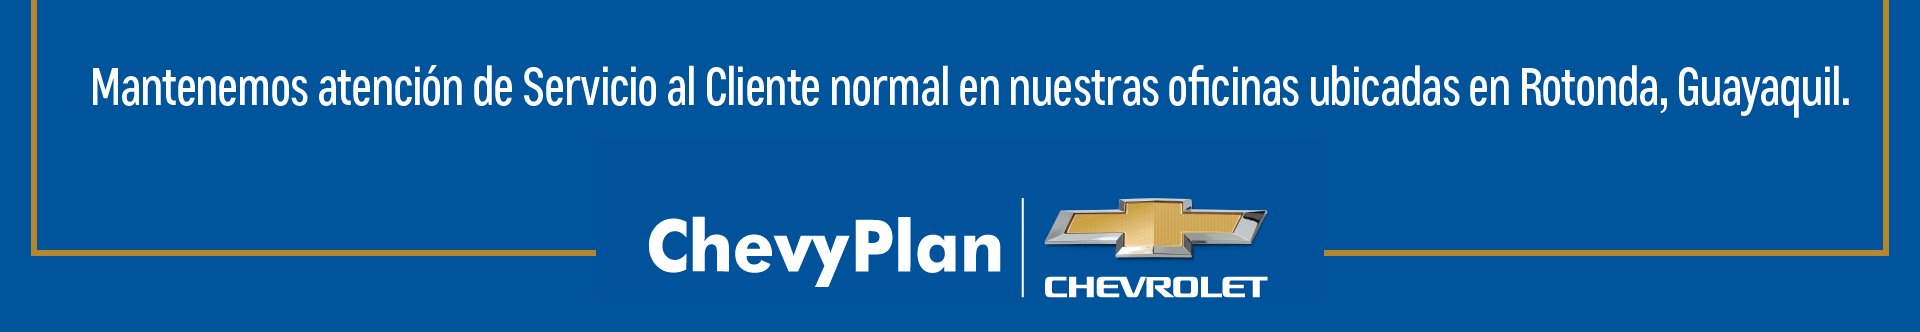 ChevyPlan